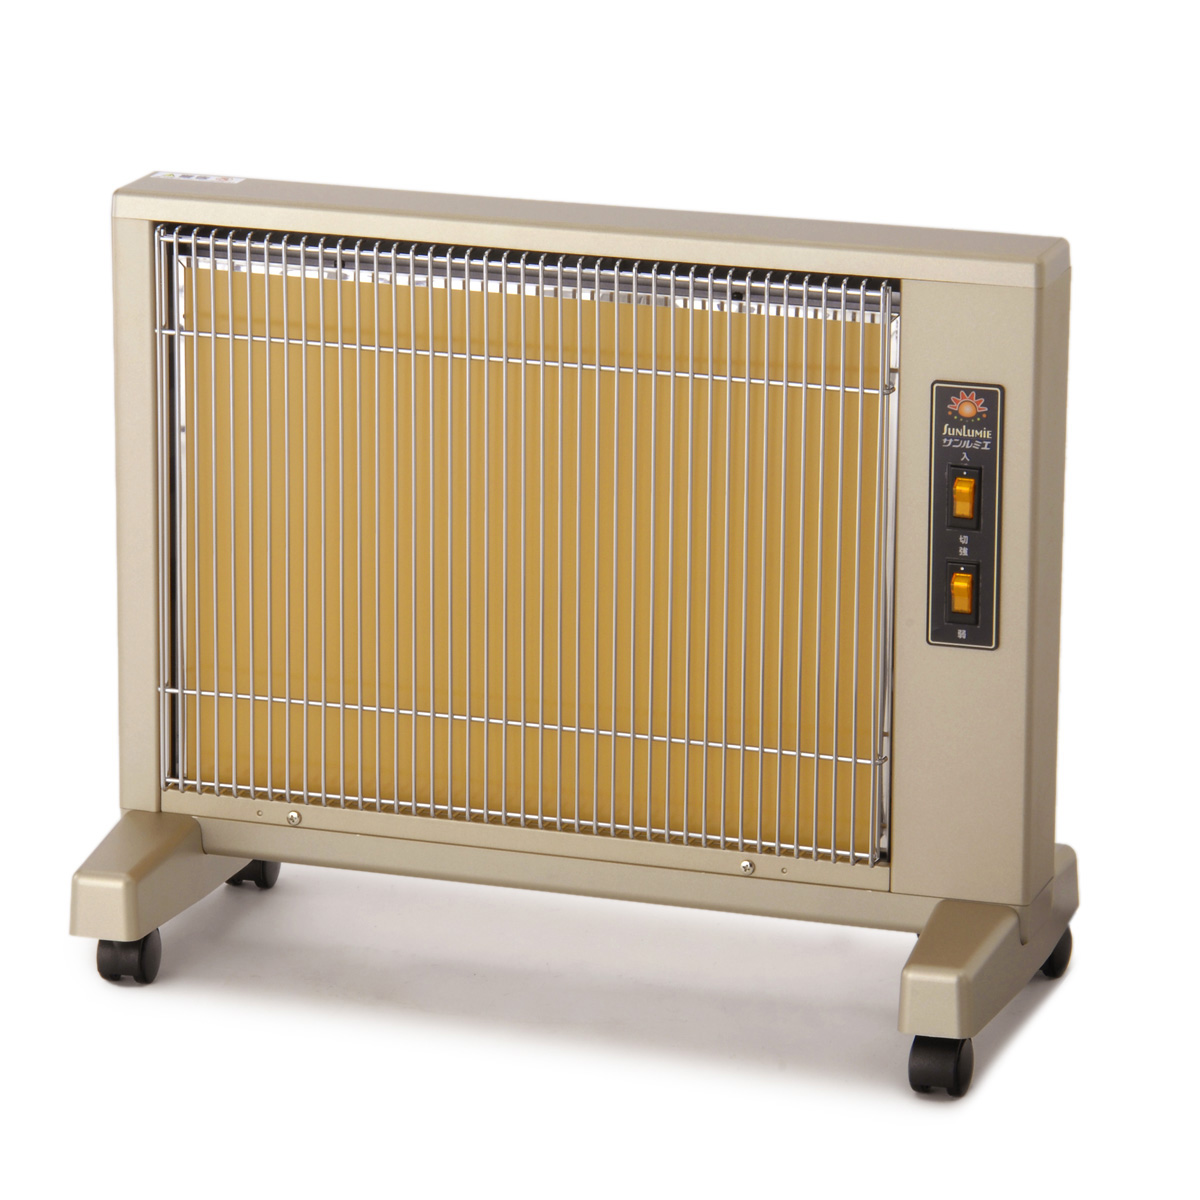 遠赤外線暖房器サンルミエ キュート 3年保証付 サンルミエ - QVC.jp